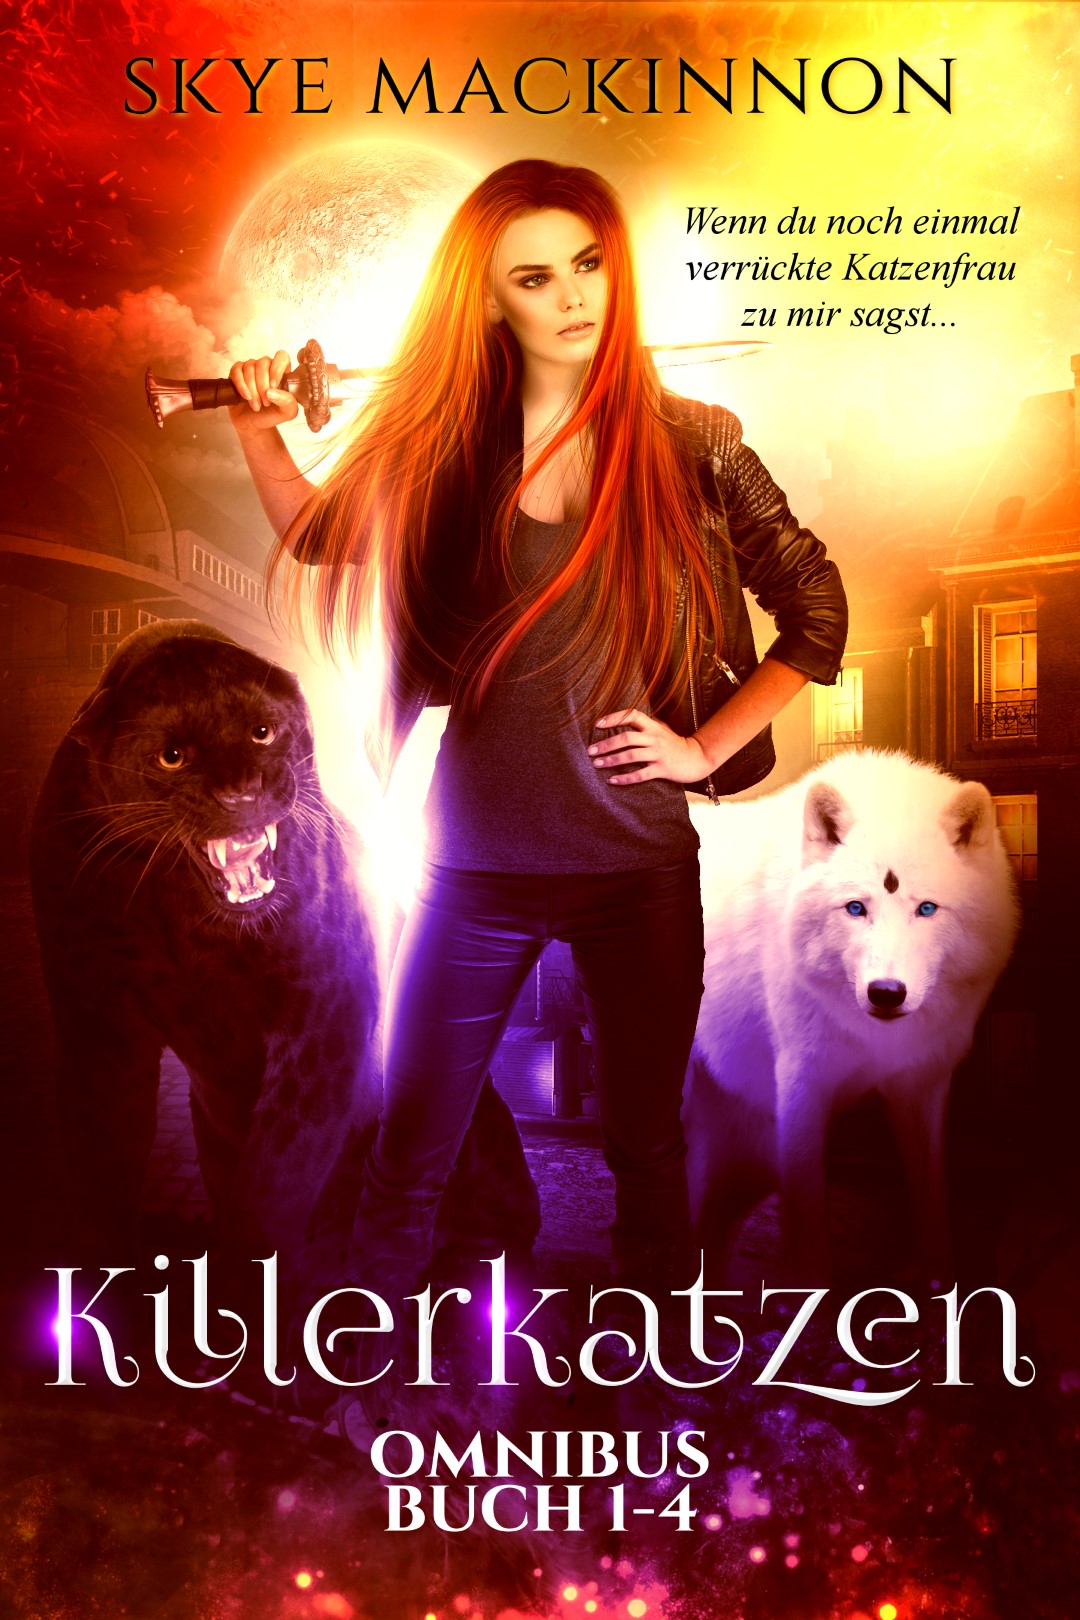 Killerkatzen: Buch 1-4